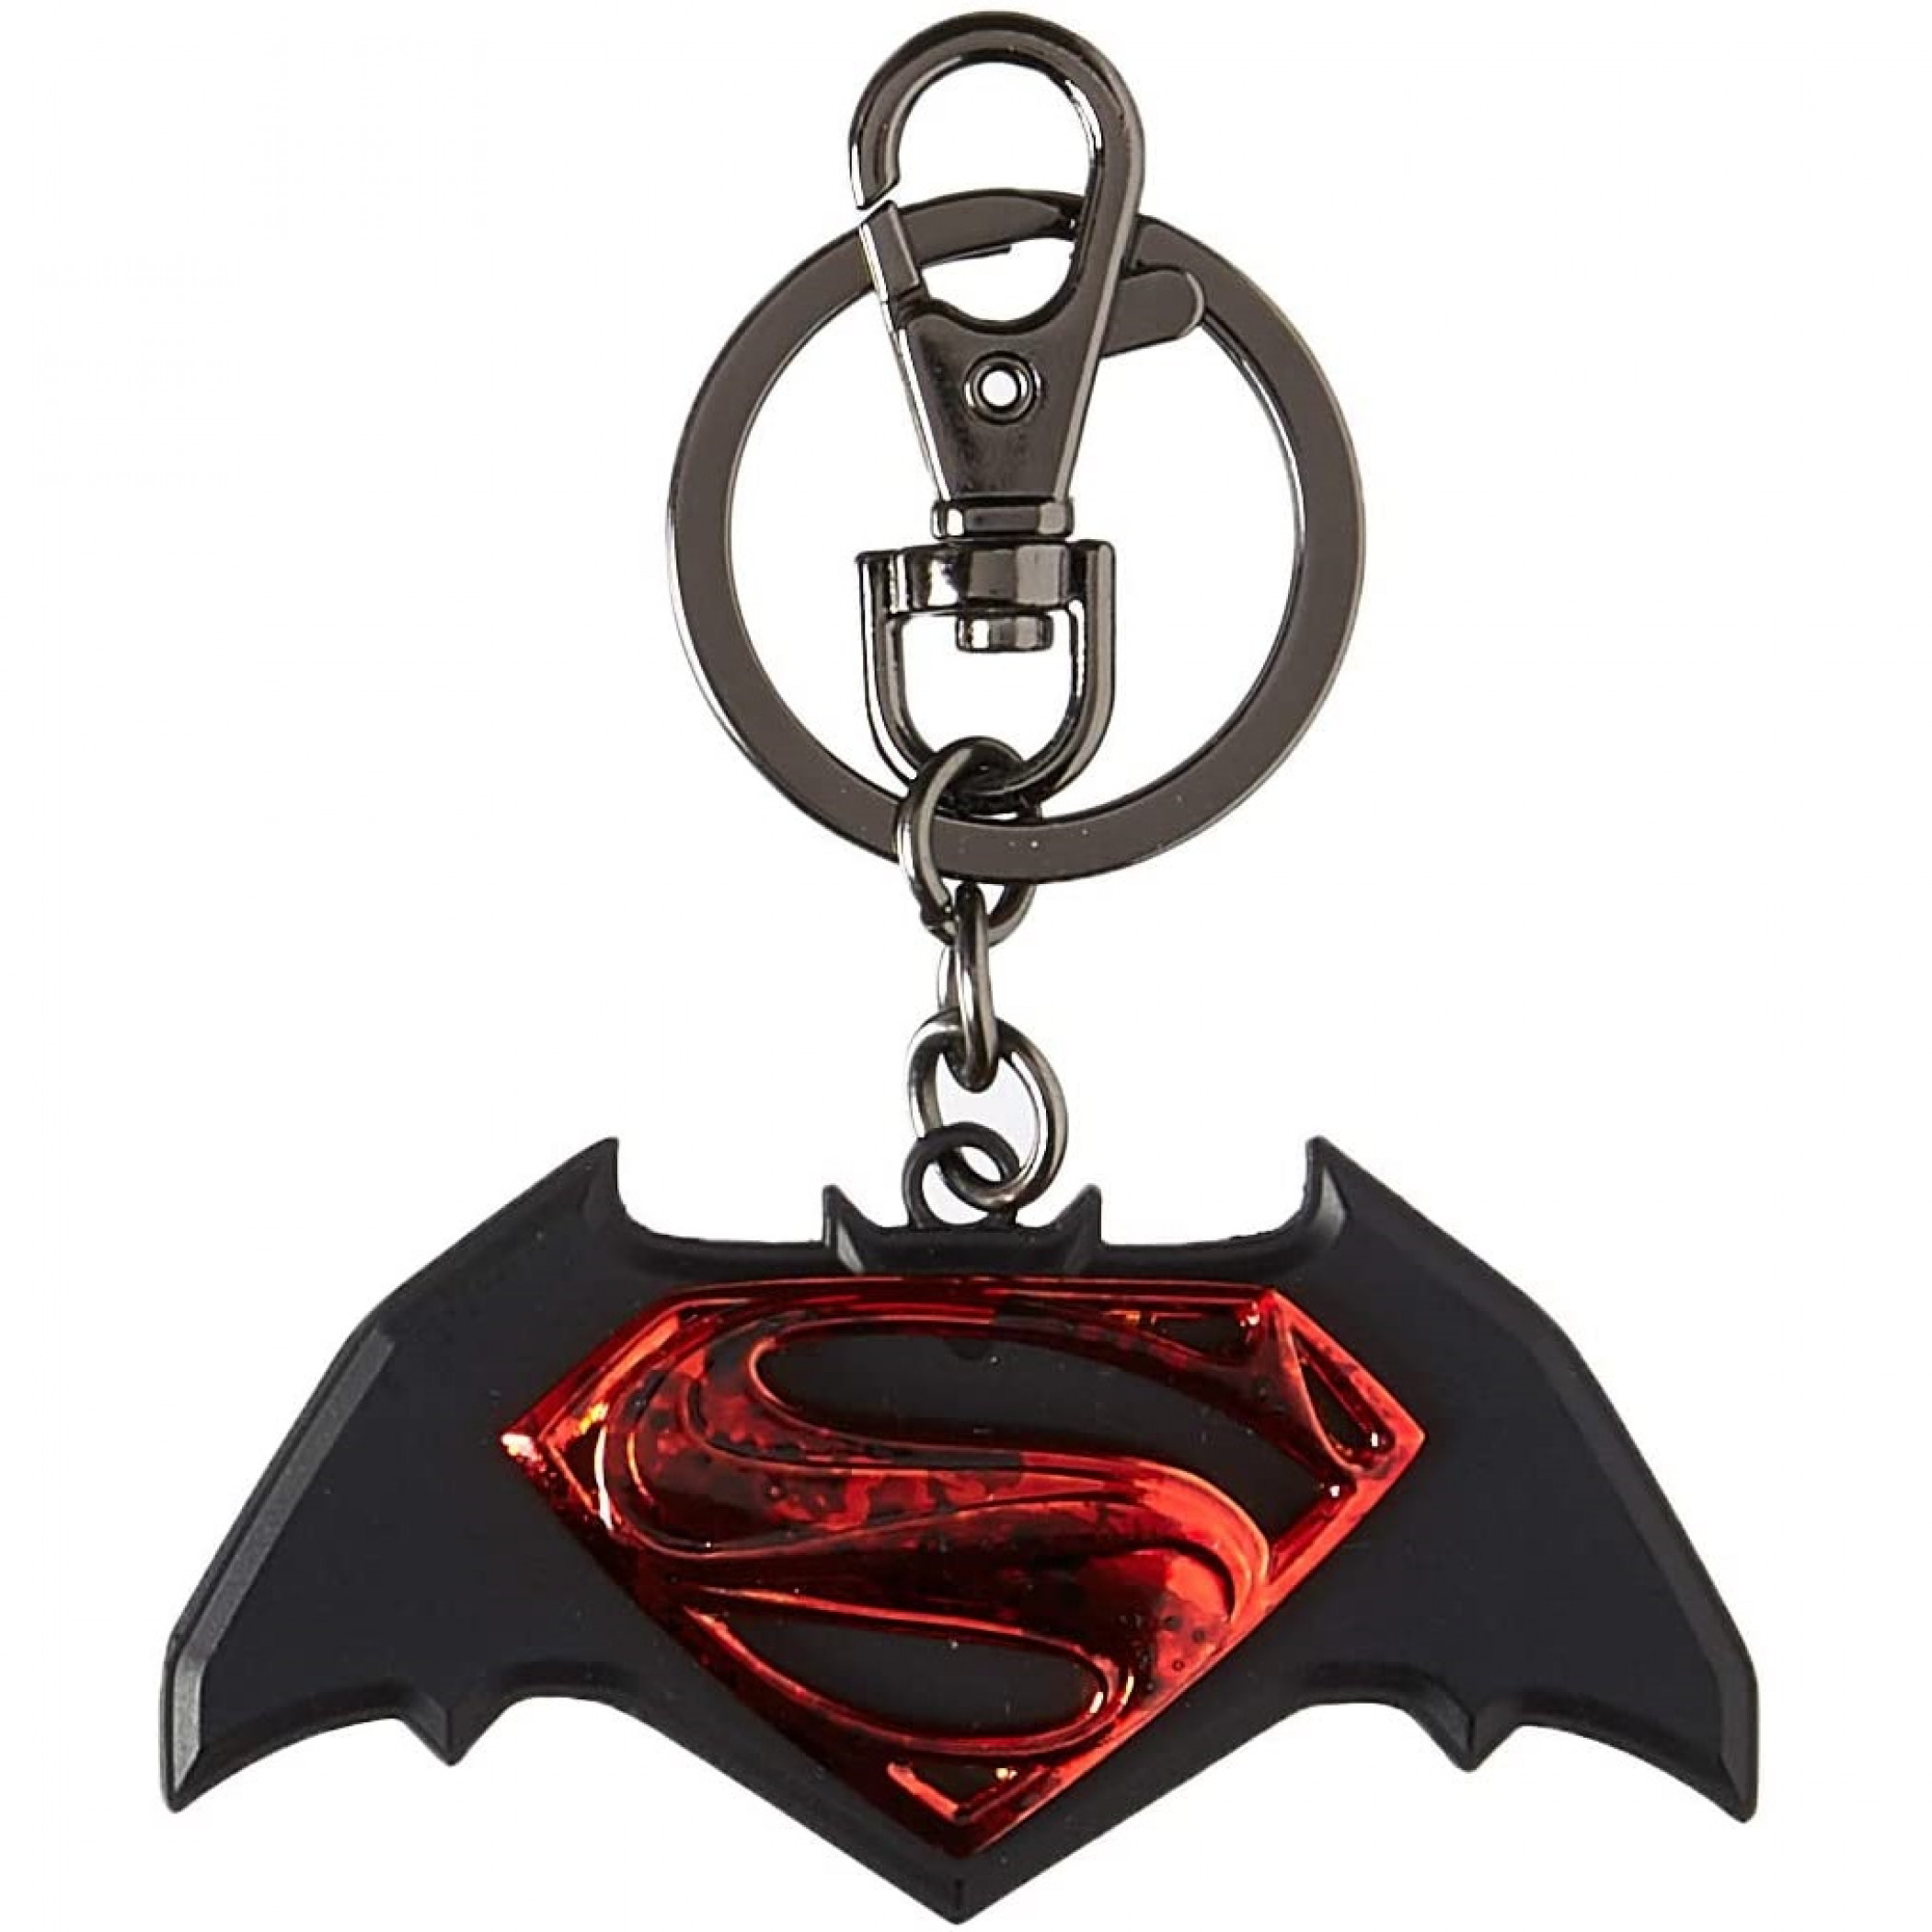 Batman v Superman Stacked Symbol Pewter Keychain